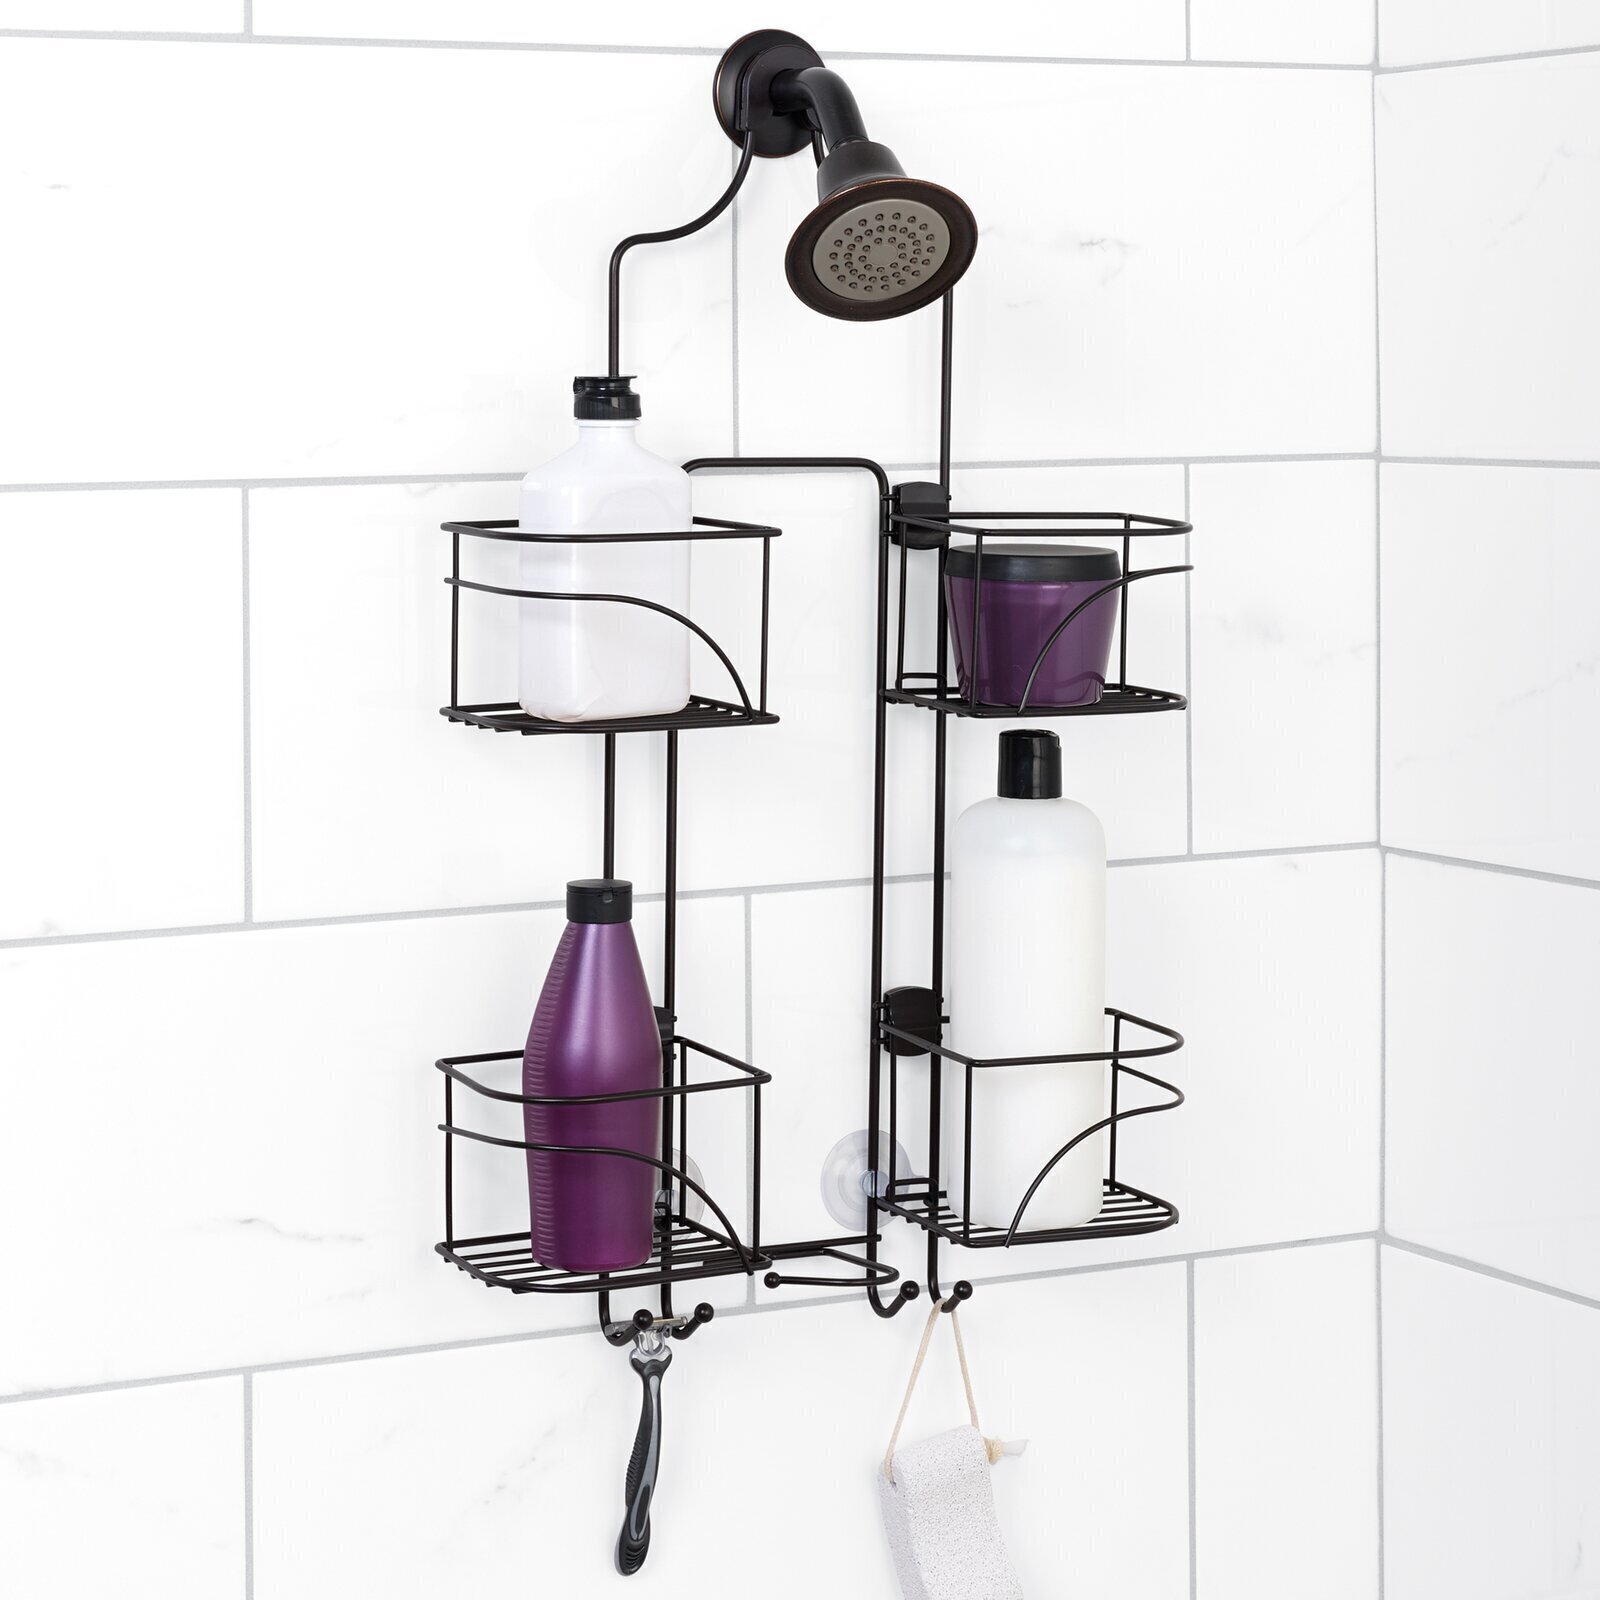 Shower Shelf Ideas For Large Households